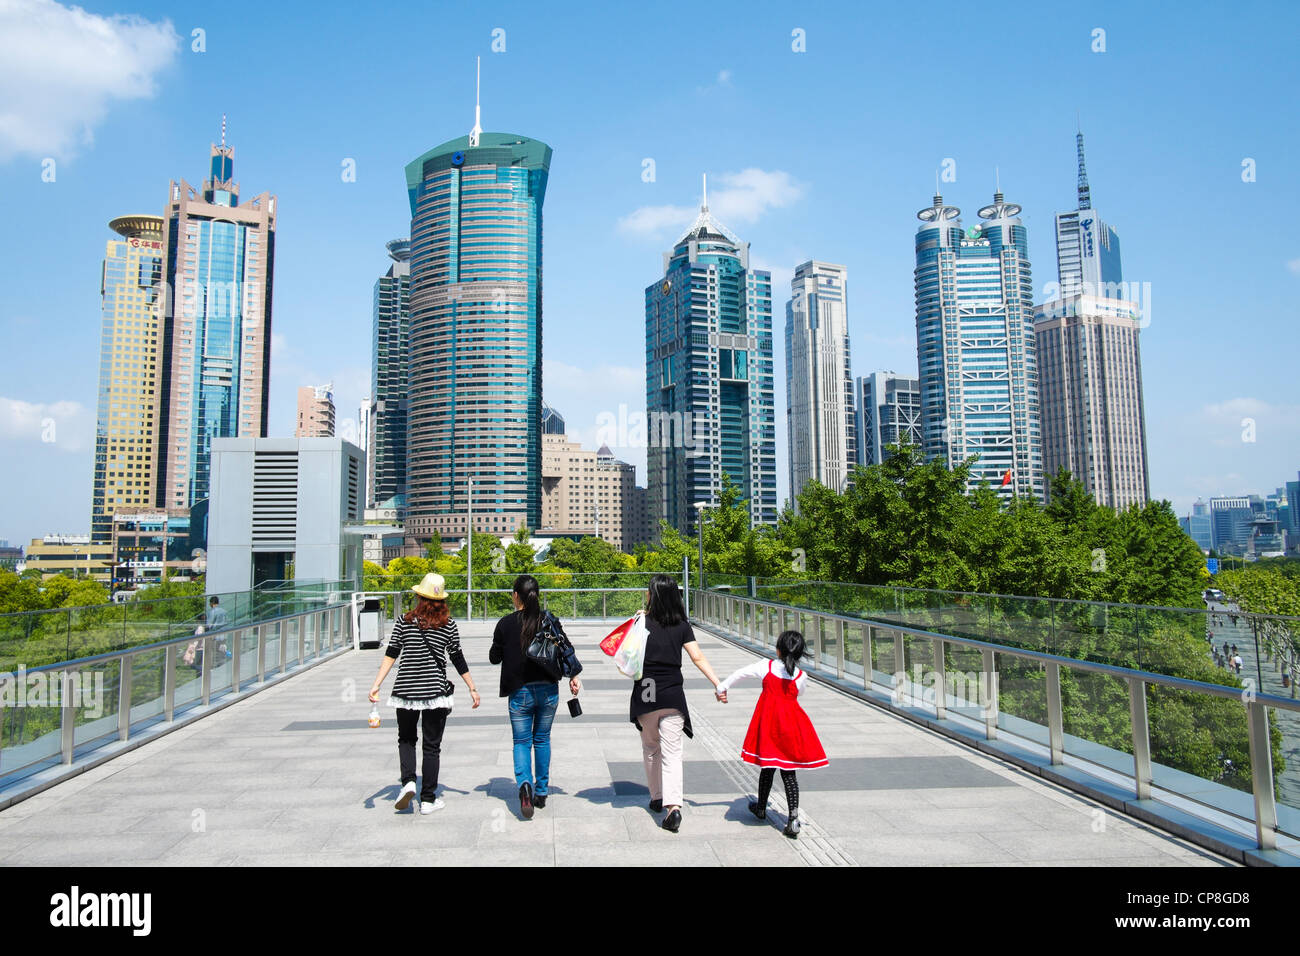 La gente camminare sulla passerella aerea con skyline di grattacieli nel distretto di Lujiazui Pudong di Shanghai in Cina Foto Stock